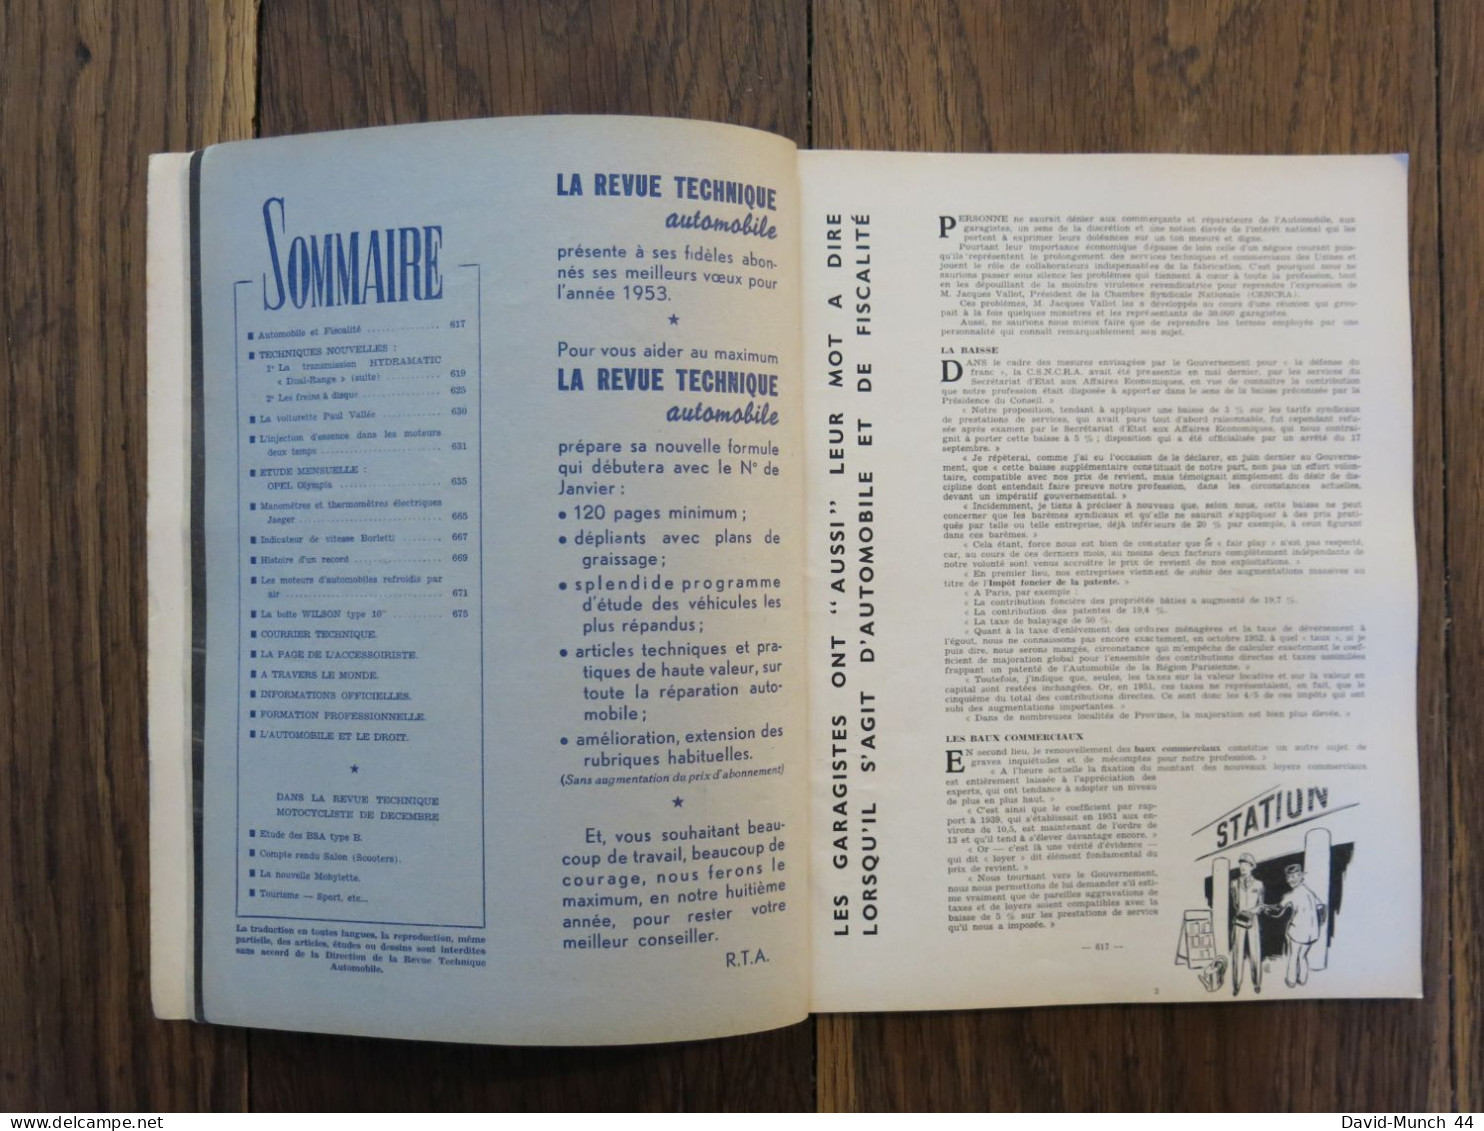 Revue Technique Automobile # 80. Décembre 1952 - Auto/Motorrad